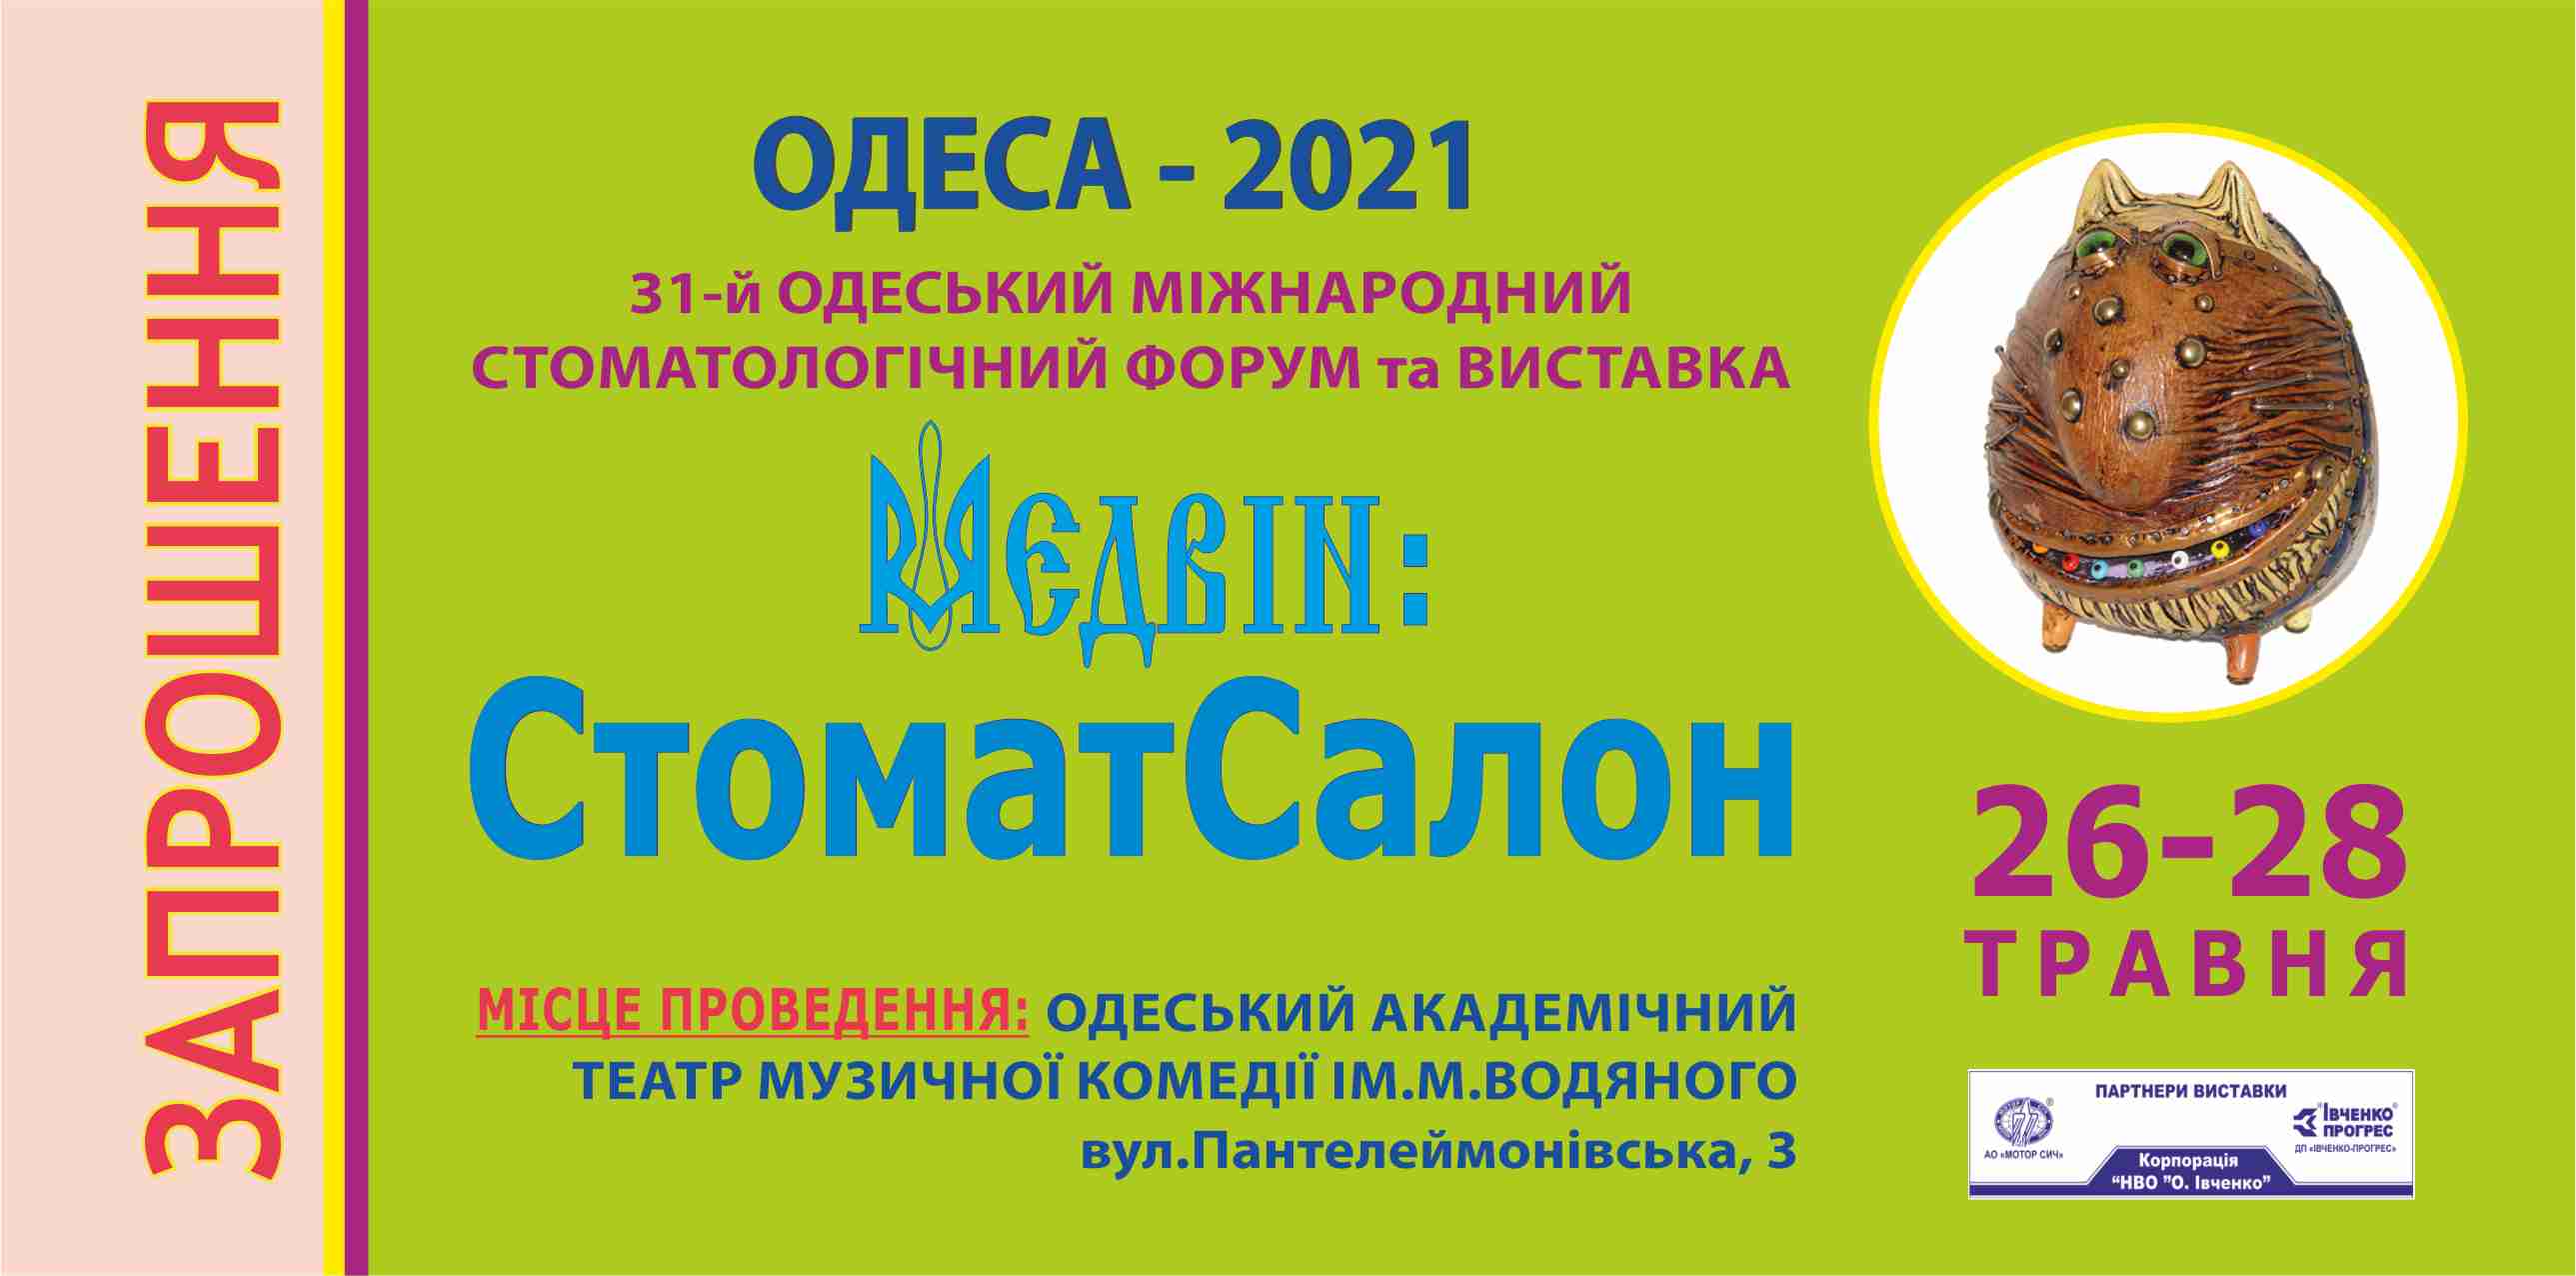 Регистрация на выставку в Одессе МЭДВИН: СтоматСалон 2021